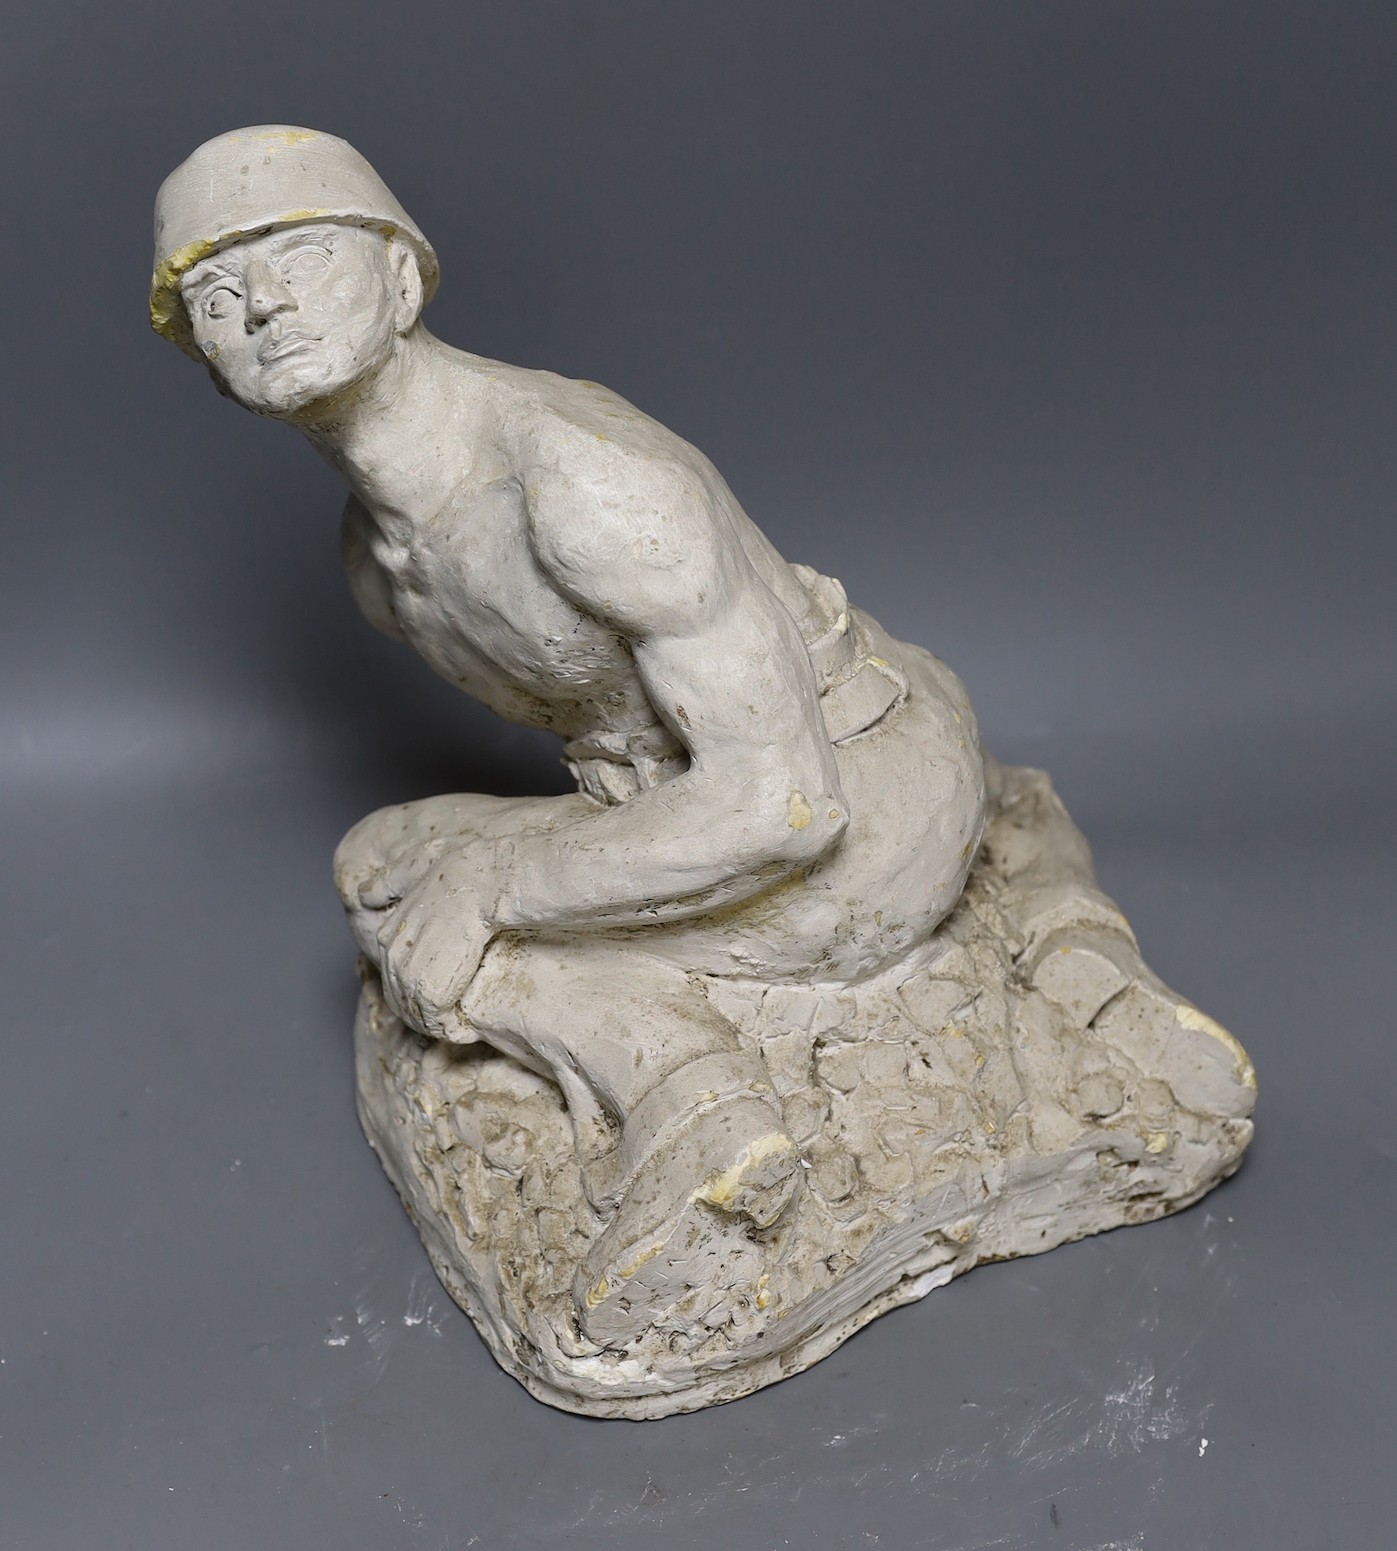 A plaster cast model of a miner, Brutaluit manner, signed L.S Odoarde? 29cm